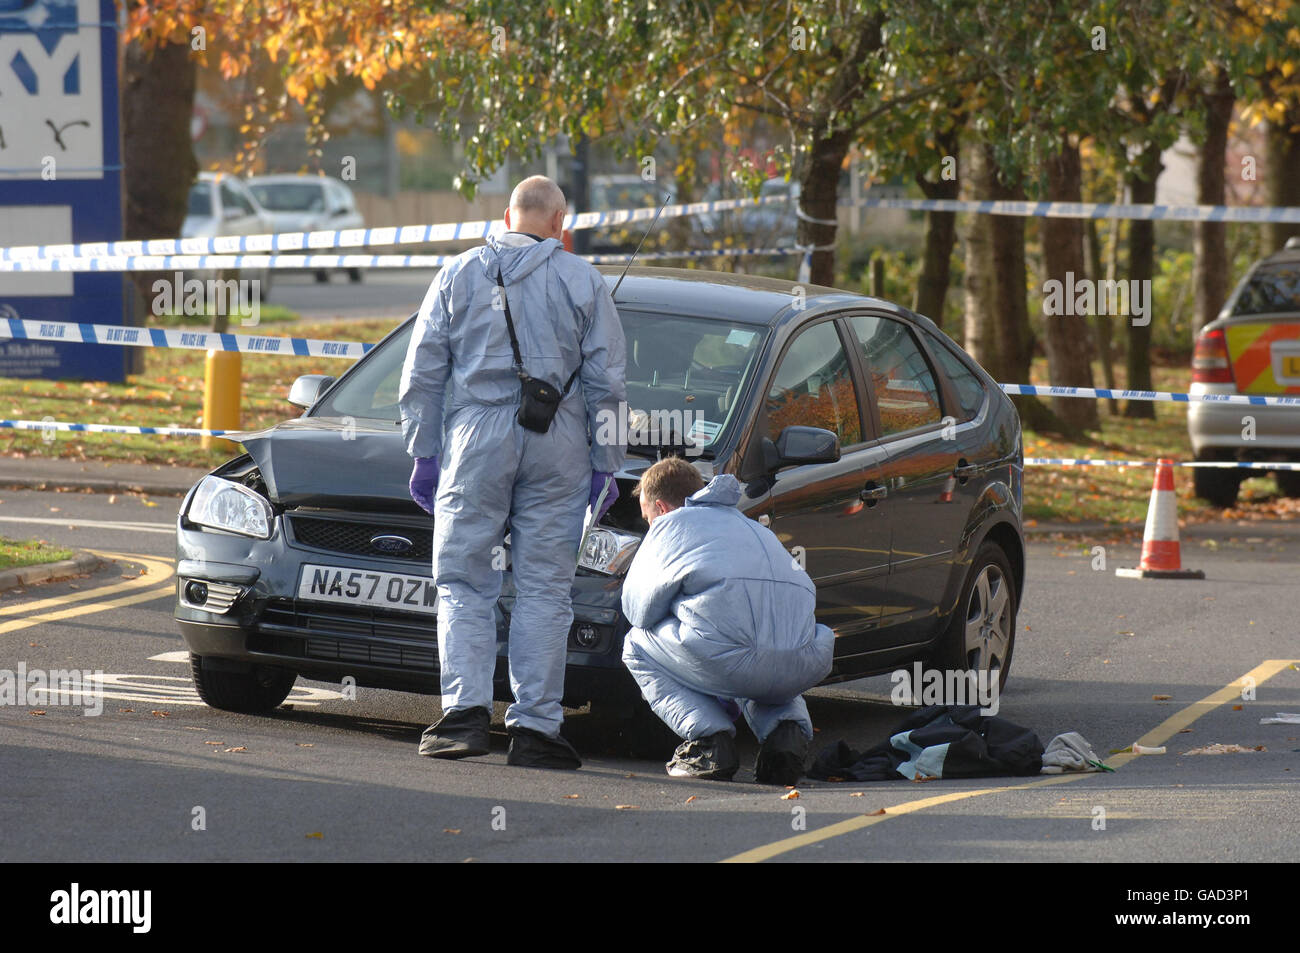 Polizeibeamter mit dem Auto getroffen. Szene im Sheraton Hotel Heathrow, wo eine Polizistin verletzt wurde, nachdem sie von einem Auto getroffen wurde. Stockfoto